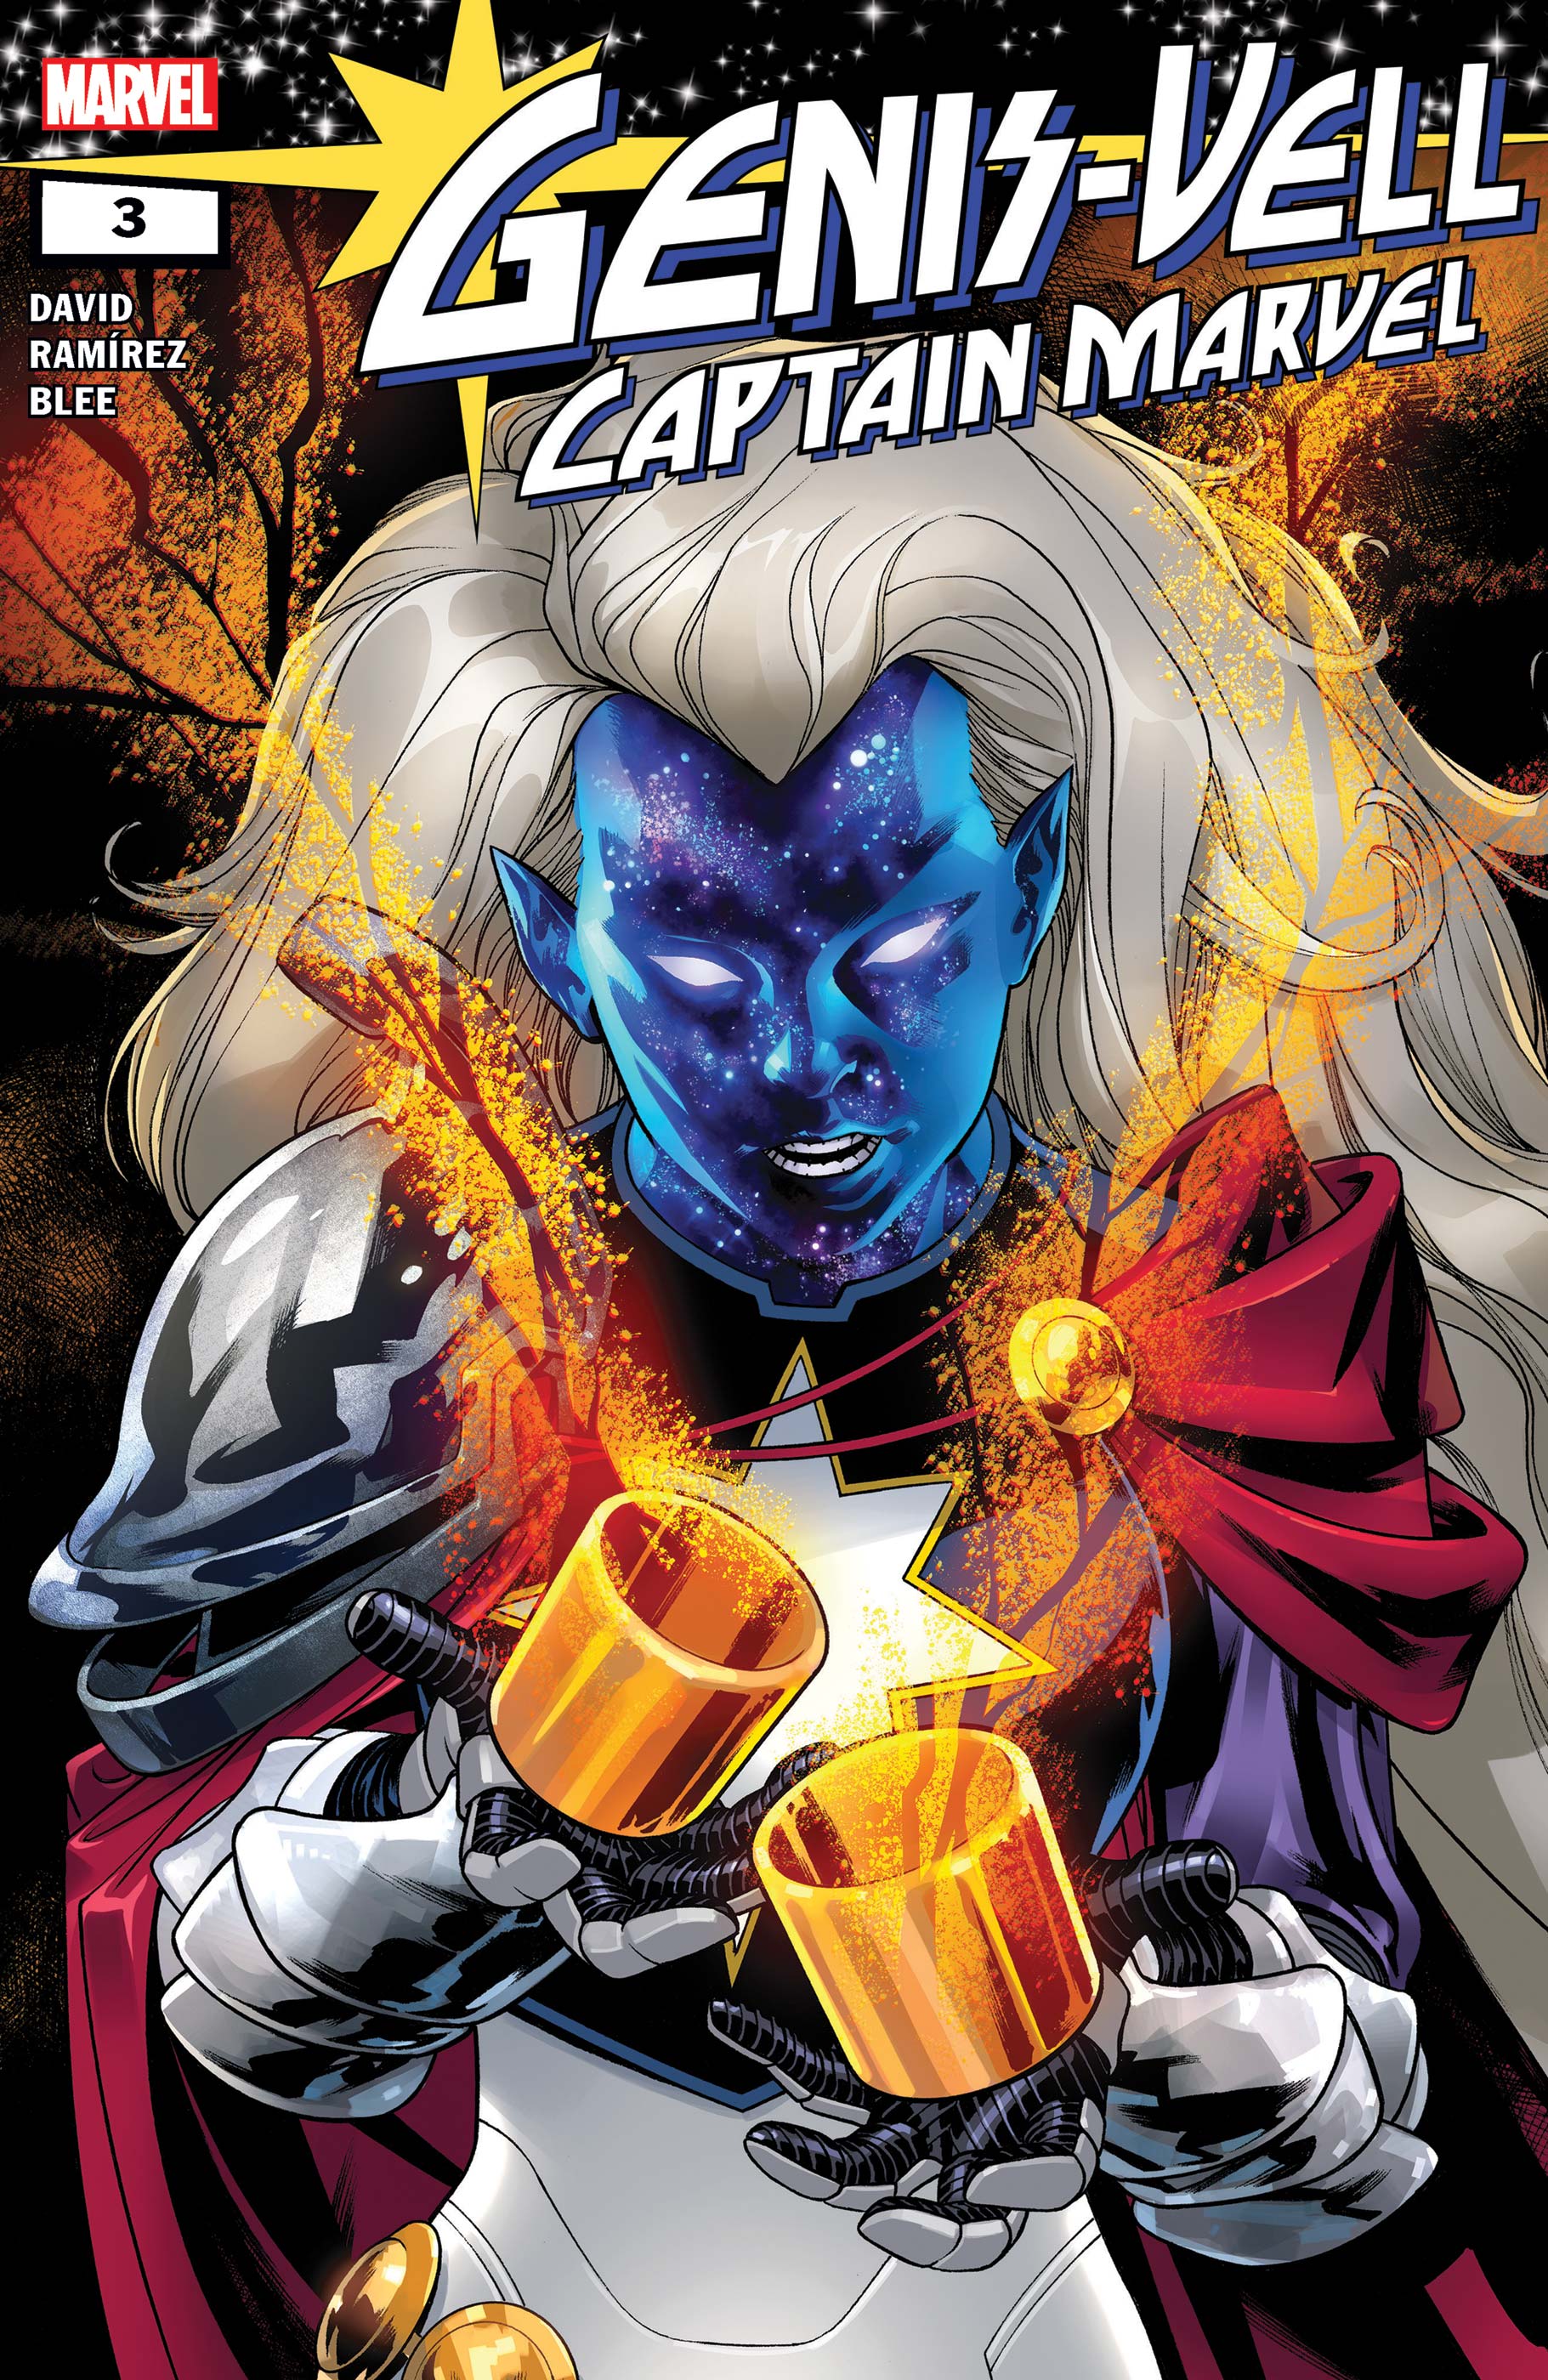 Genis-Vell: Captain Marvel (2022) #3